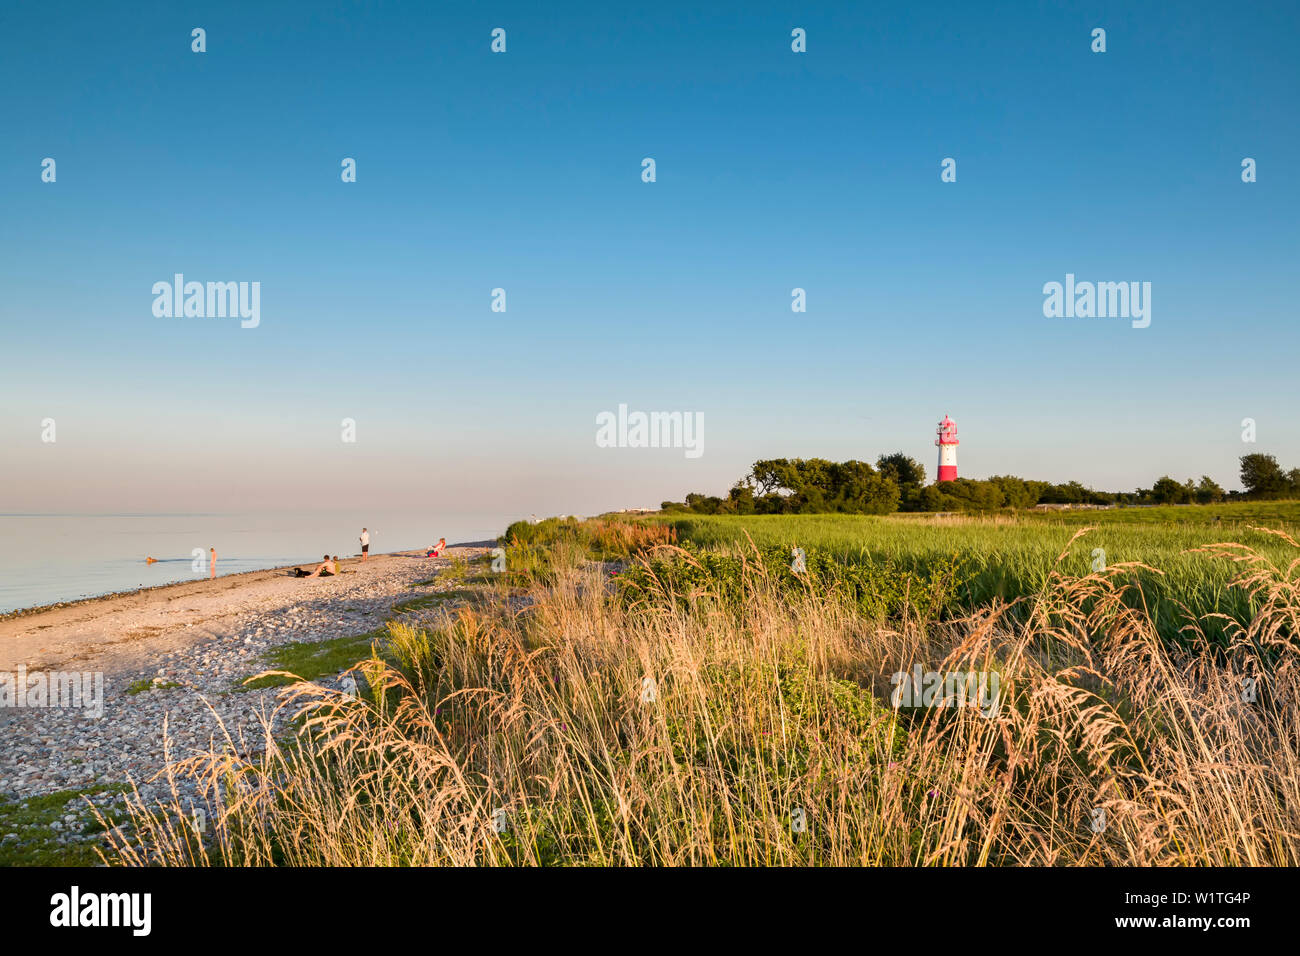 Falshoeft Lighthouse, Falshoeft, Angeln, Baltic coast, Schleswig-Holstein, Germany Stock Photo